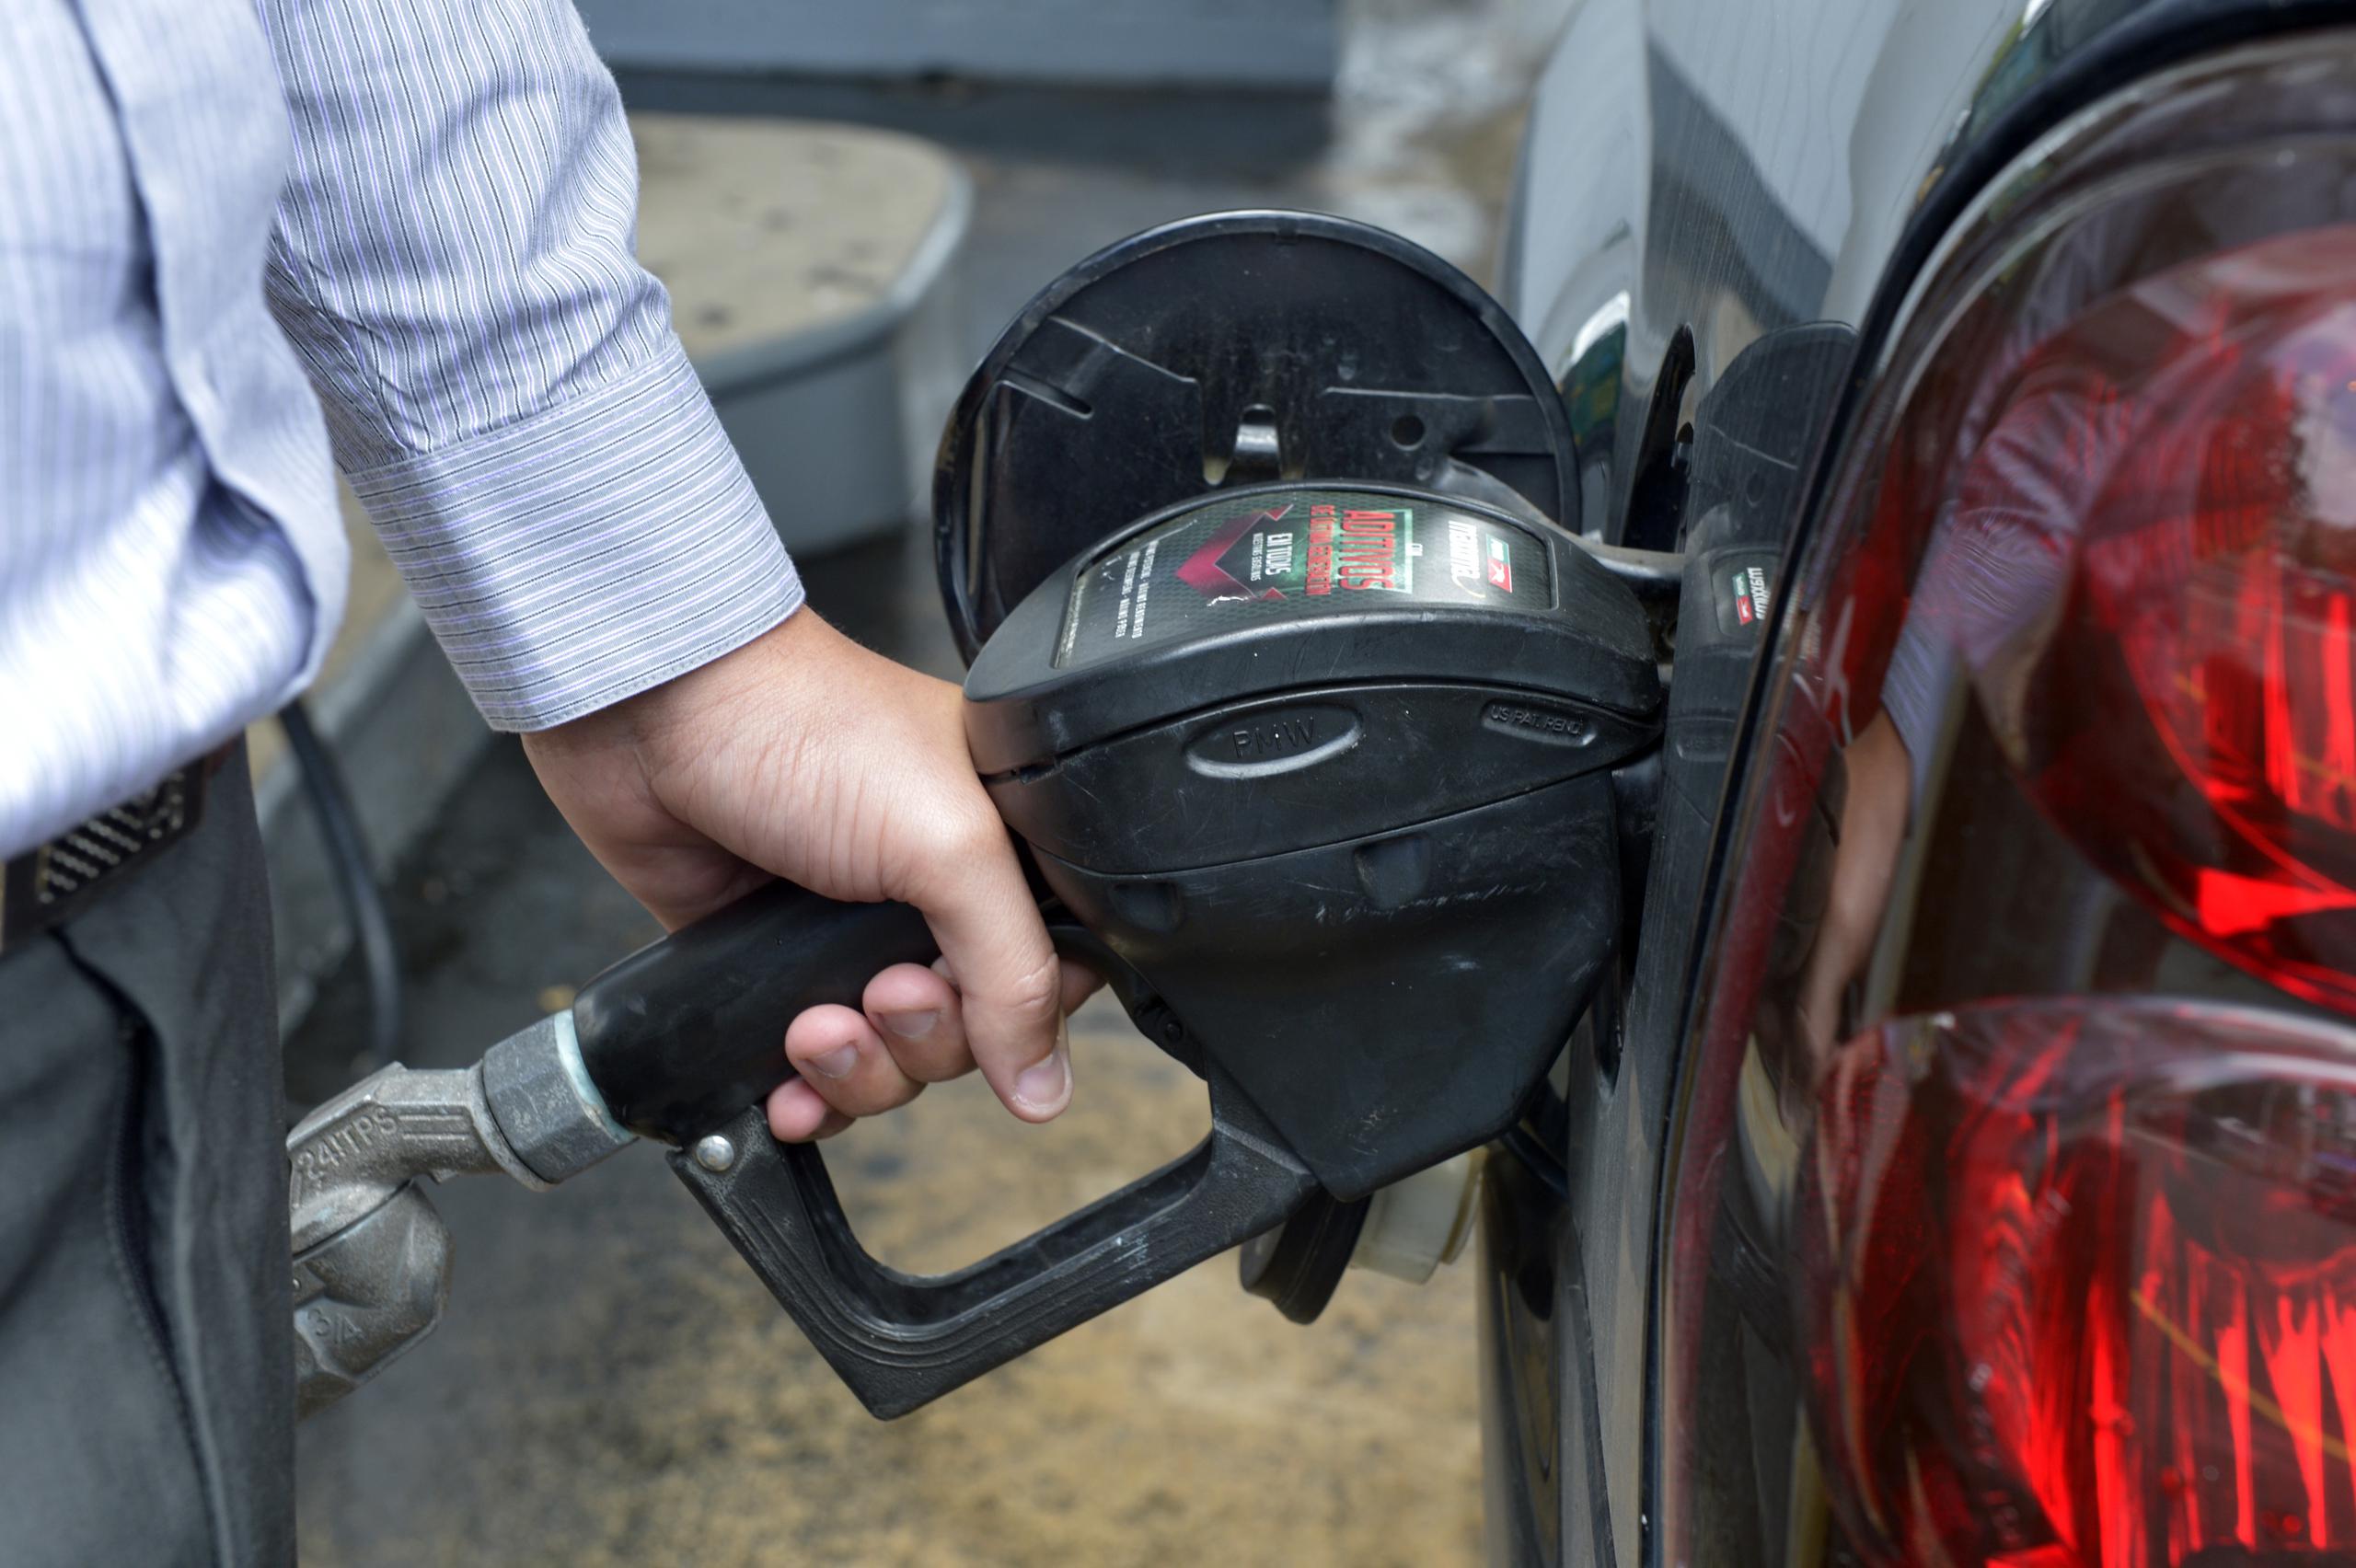 Daco registra varias marcas de gasolina entre los 87.7 centavos a los 89.9 centavos. Estas son Econmaxx, Bita's, Gulf, Ultra Top Fuel, 76, Phillips y Toral.